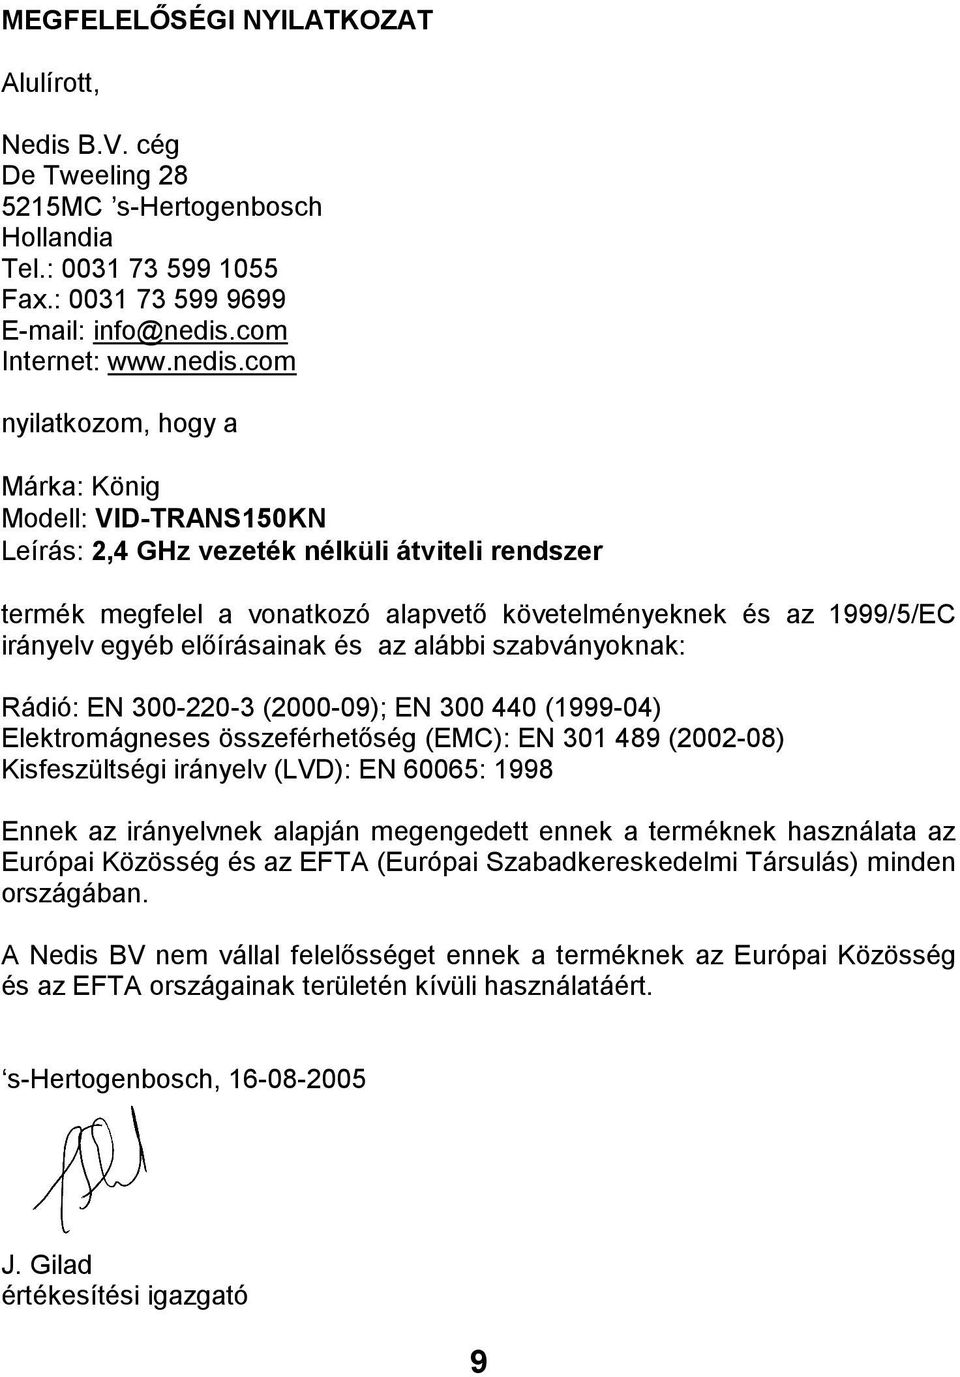 com nyilatkozom, hogy a Márka: König Modell: VID-TRANS150KN Leírás: 2,4 GHz vezeték nélküli átviteli rendszer termék megfelel a vonatkozó alapvető követelményeknek és az 1999/5/EC irányelv egyéb